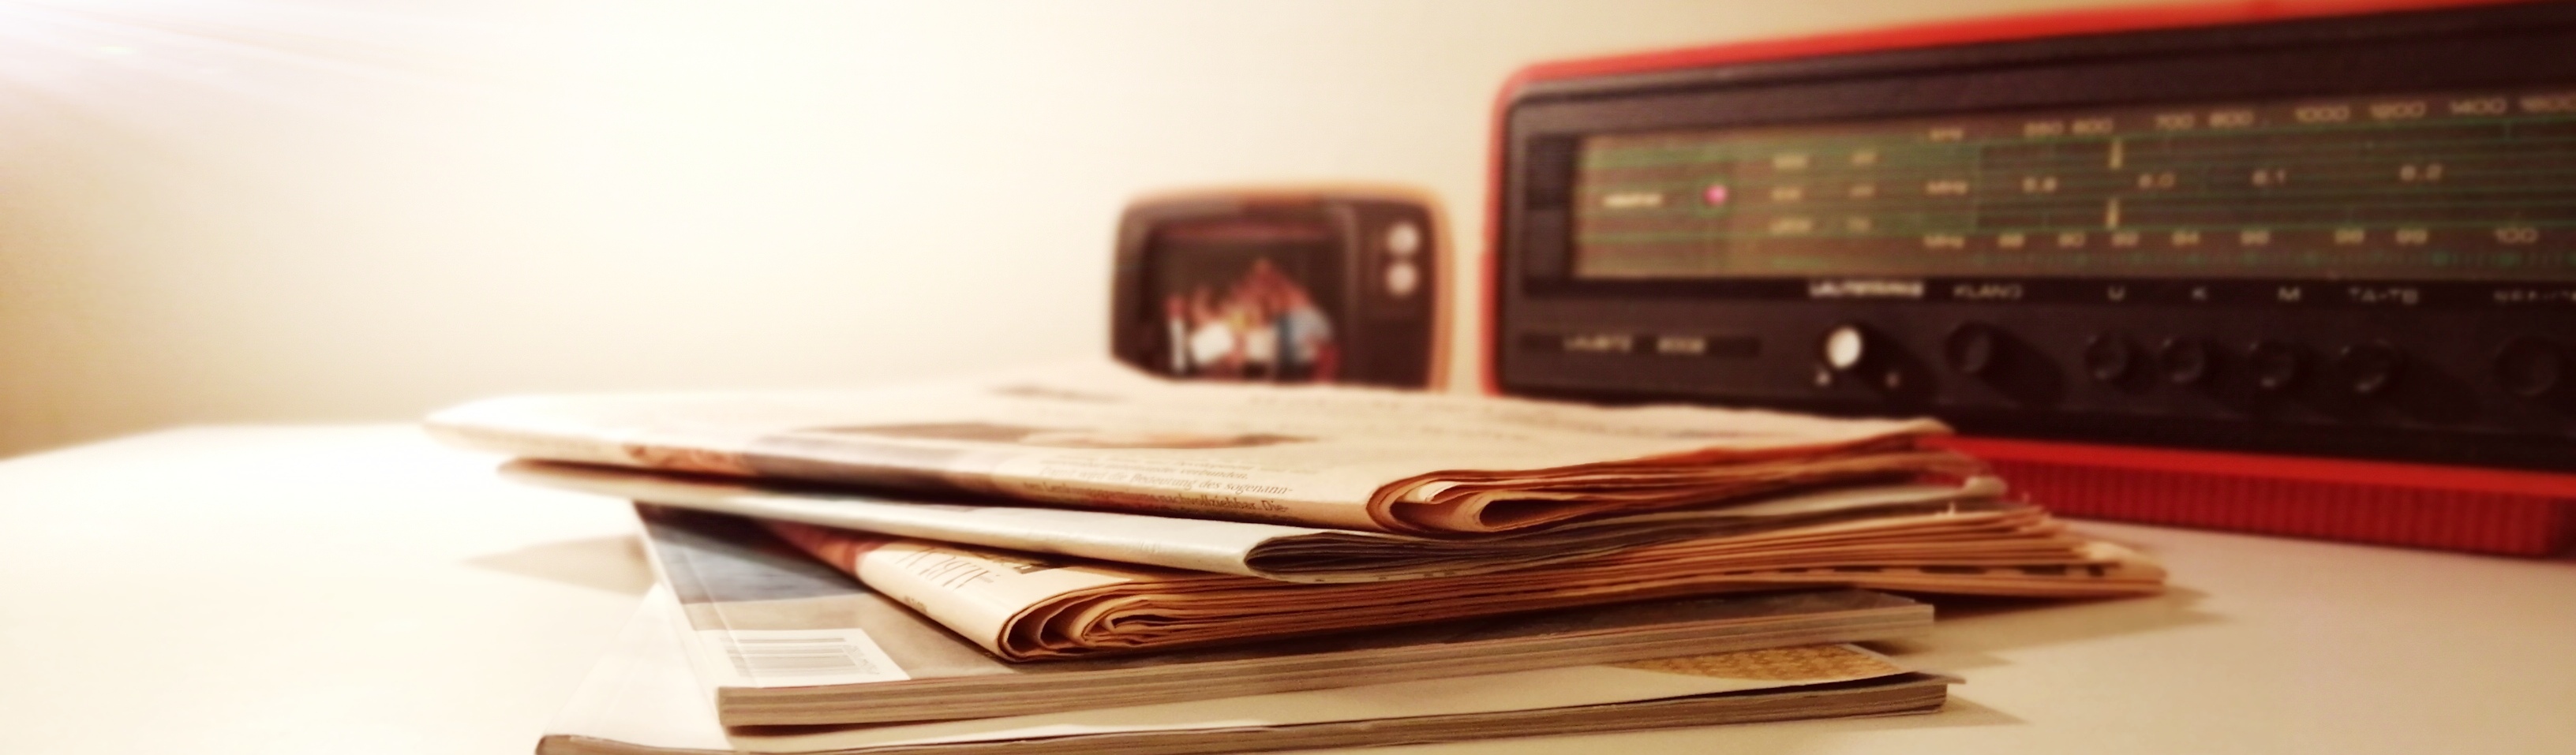 Tisch mit Zeitung und Radio